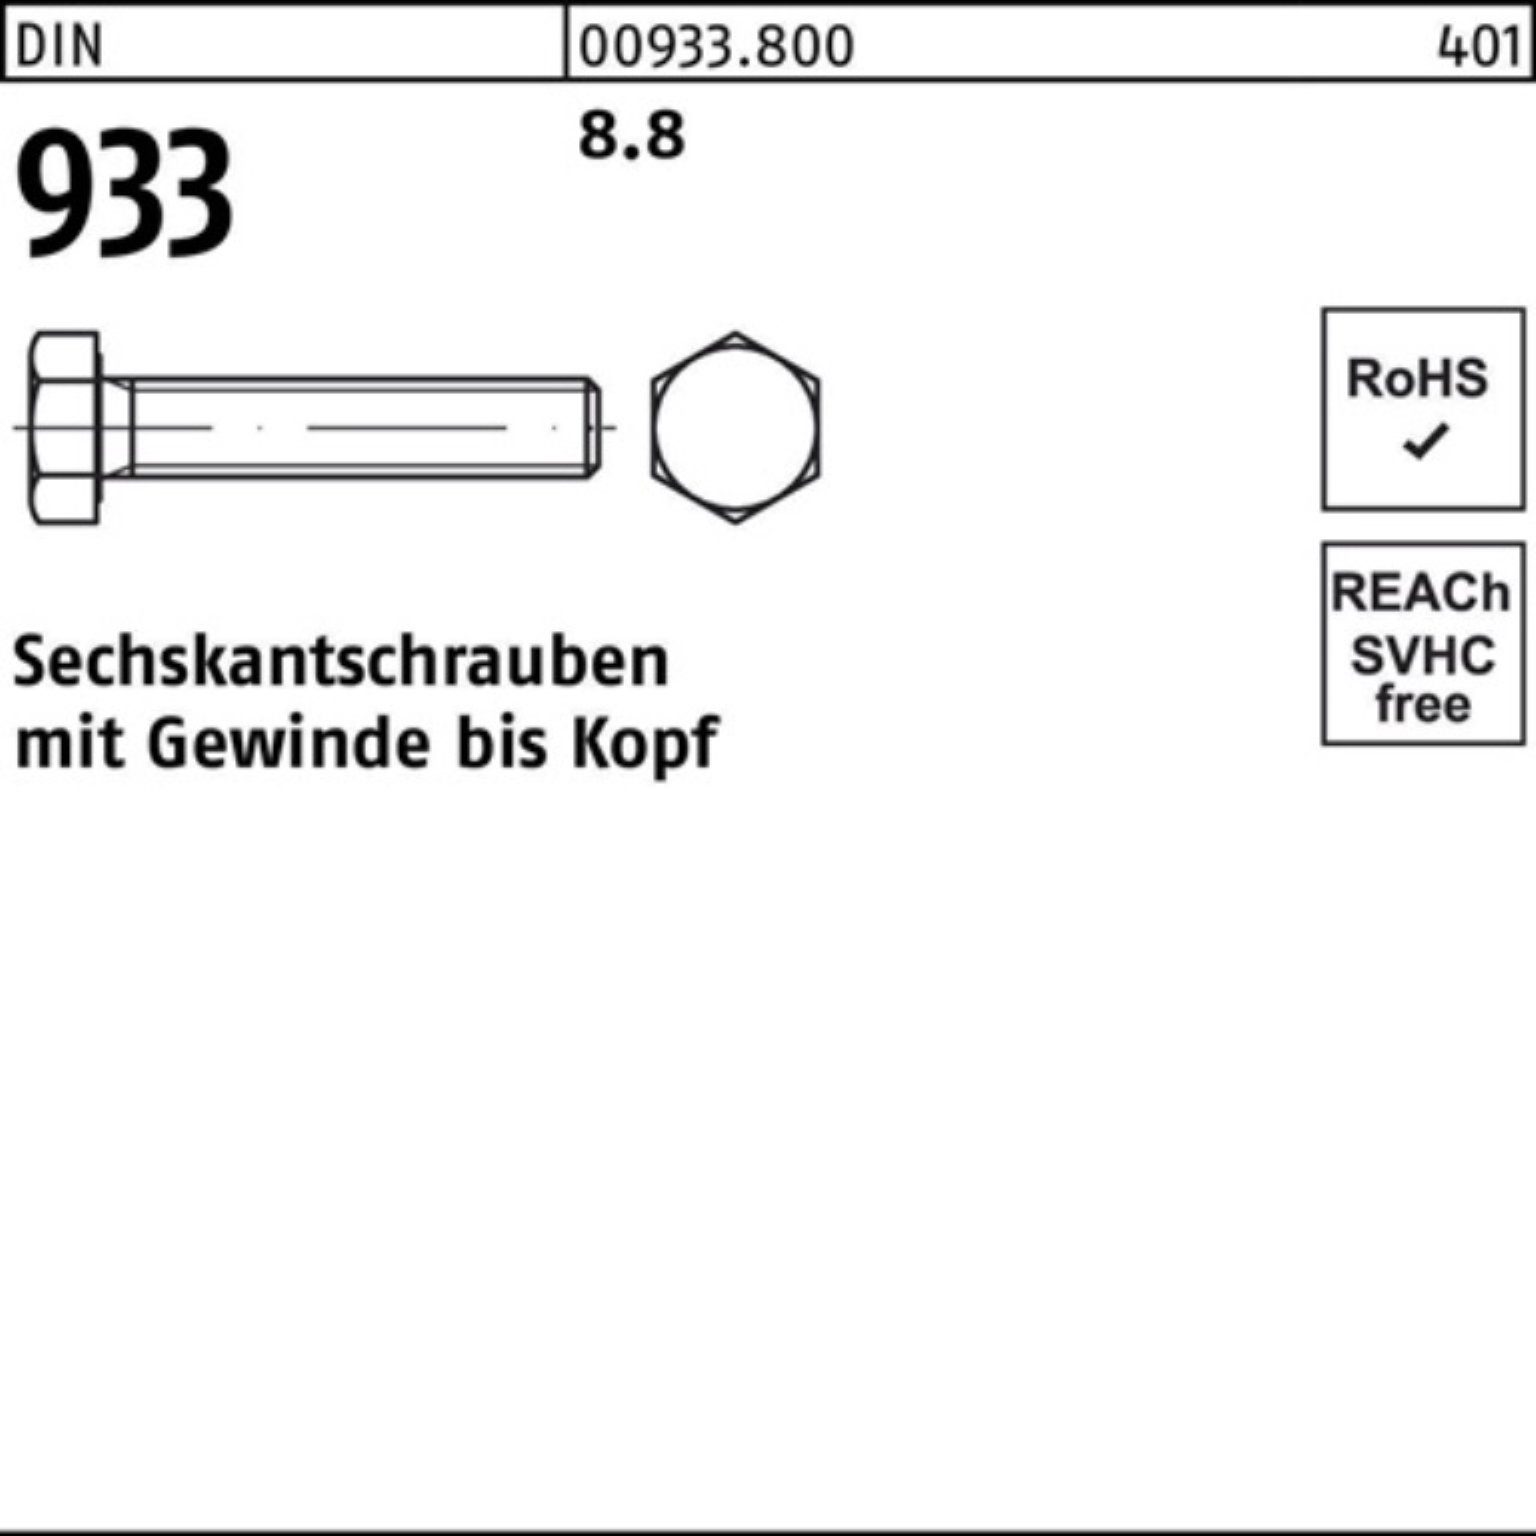 Sparaktion Reyher Sechskantschraube 100er 933 200 Pack 8.8 DIN VG 1 Sechskantschraube M20x 933 DIN Stück